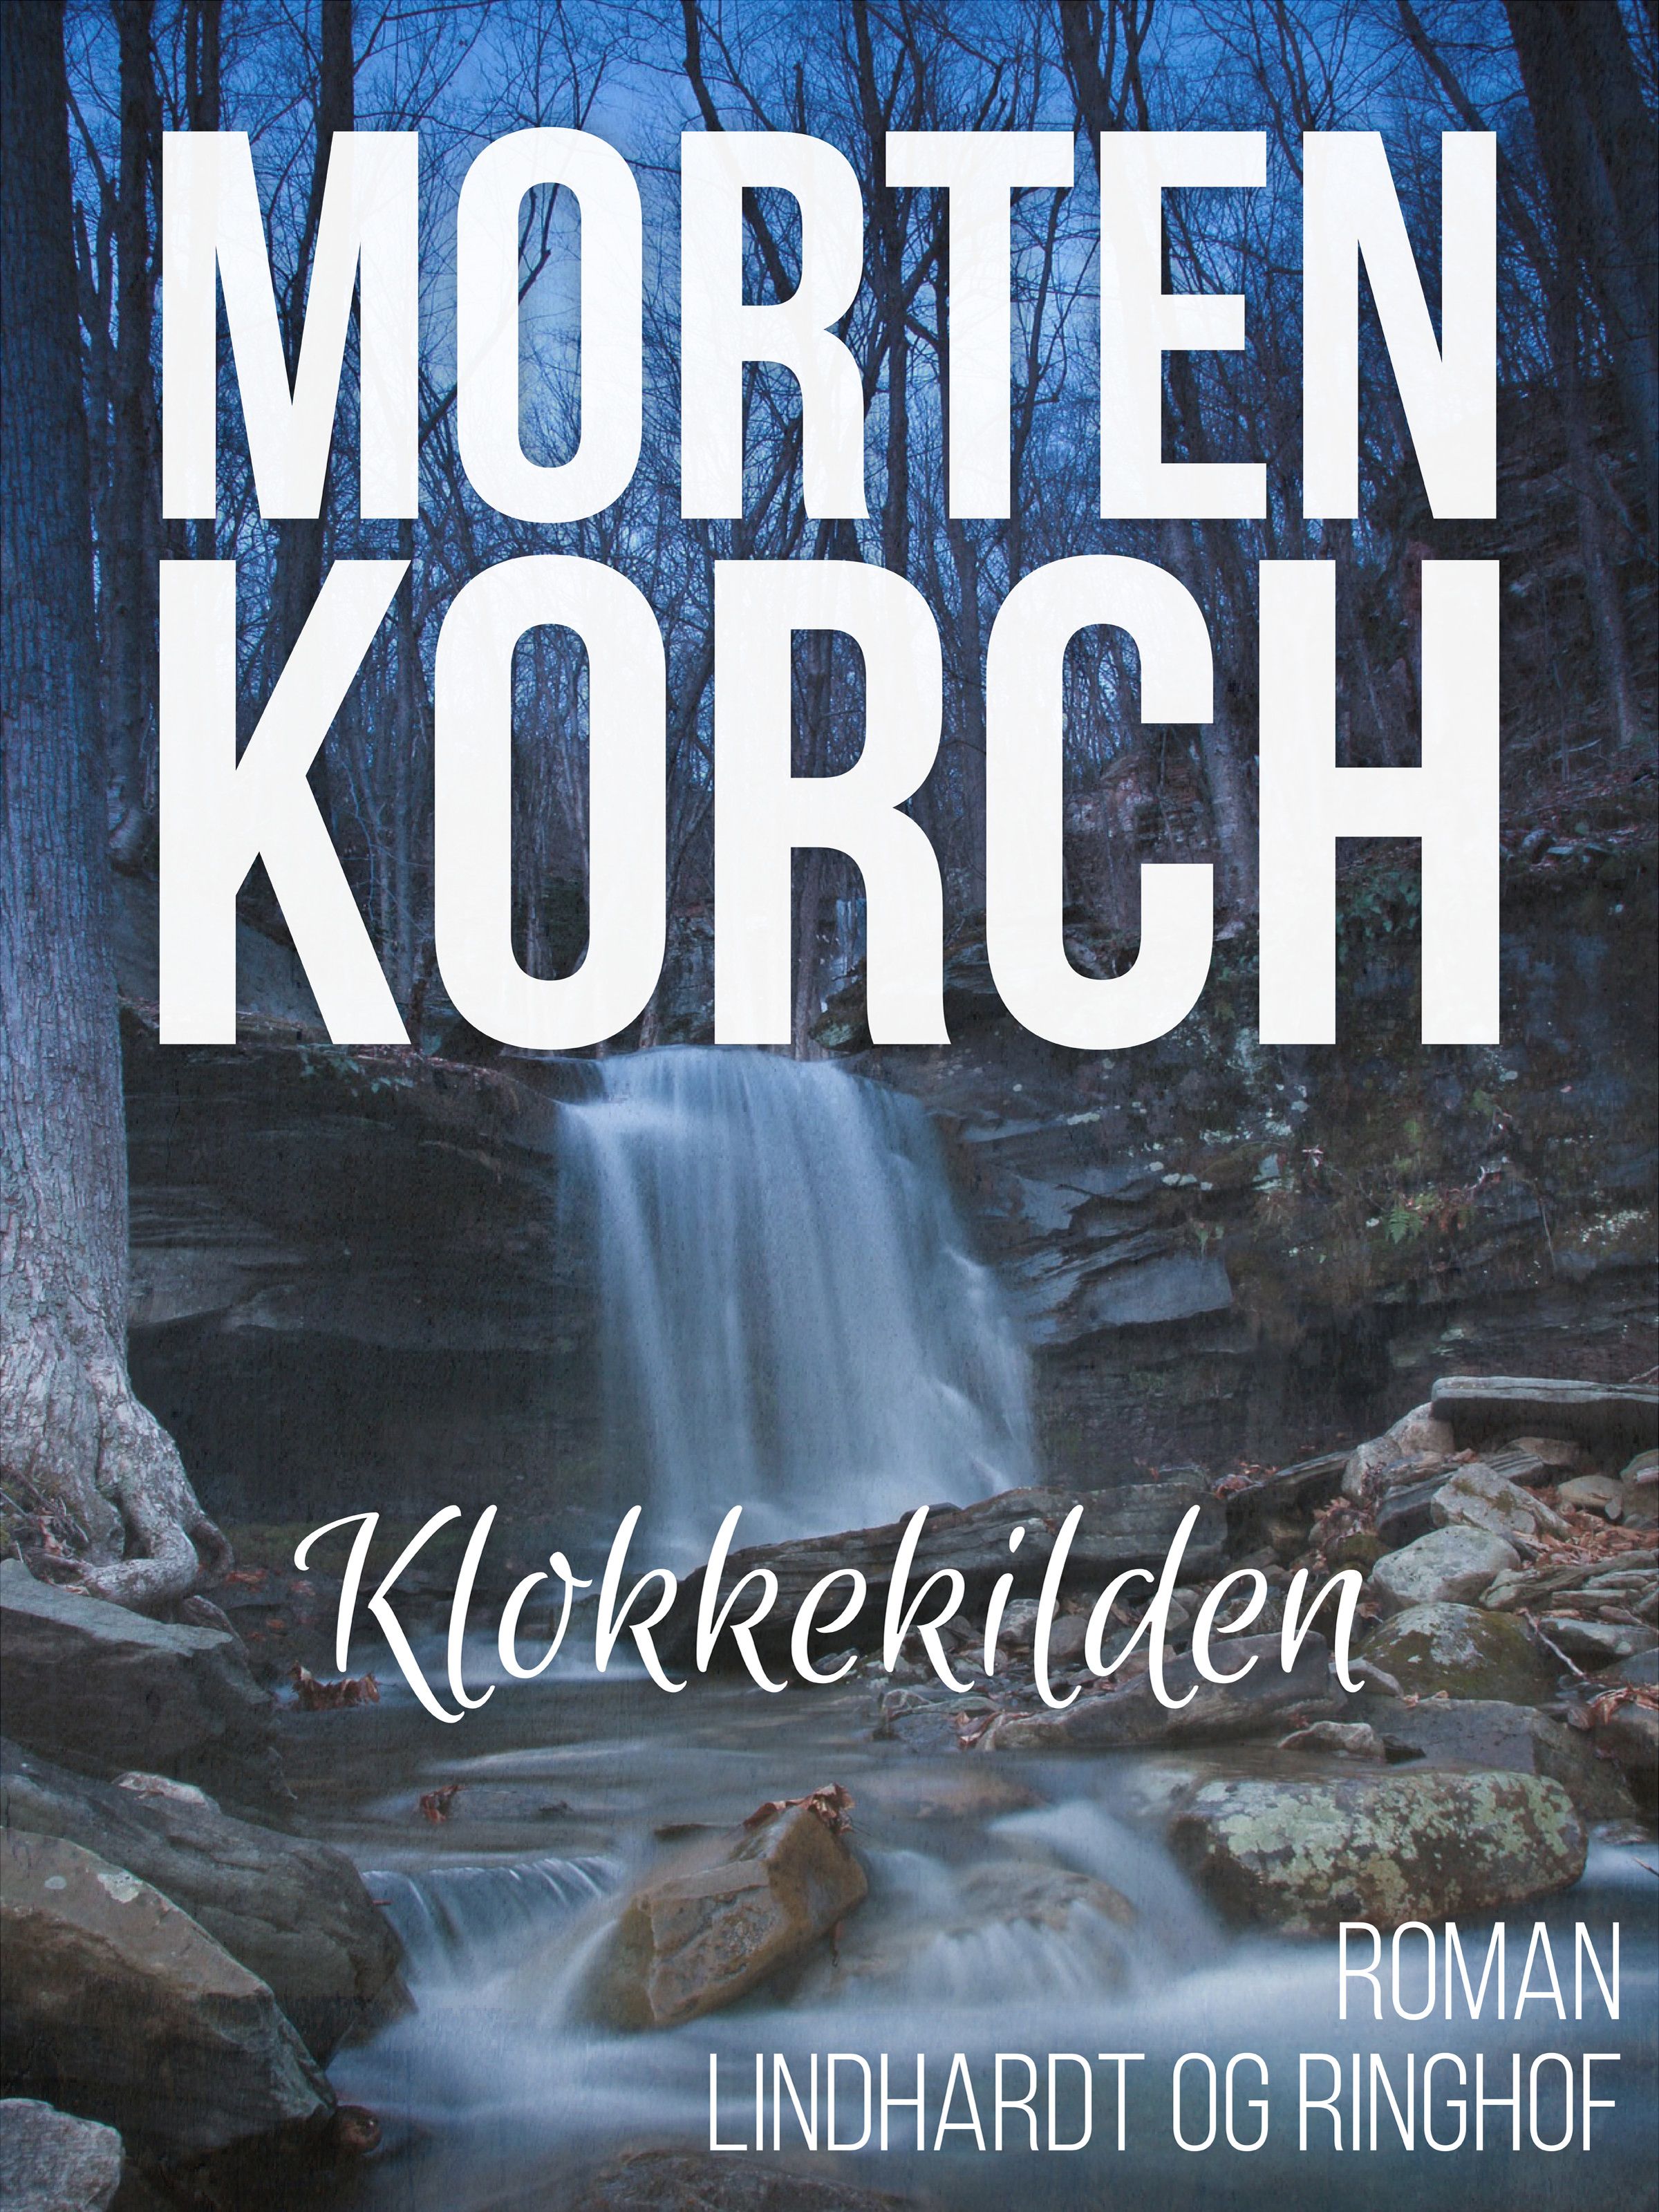 Klokkekilden, e-bog af Morten Korch